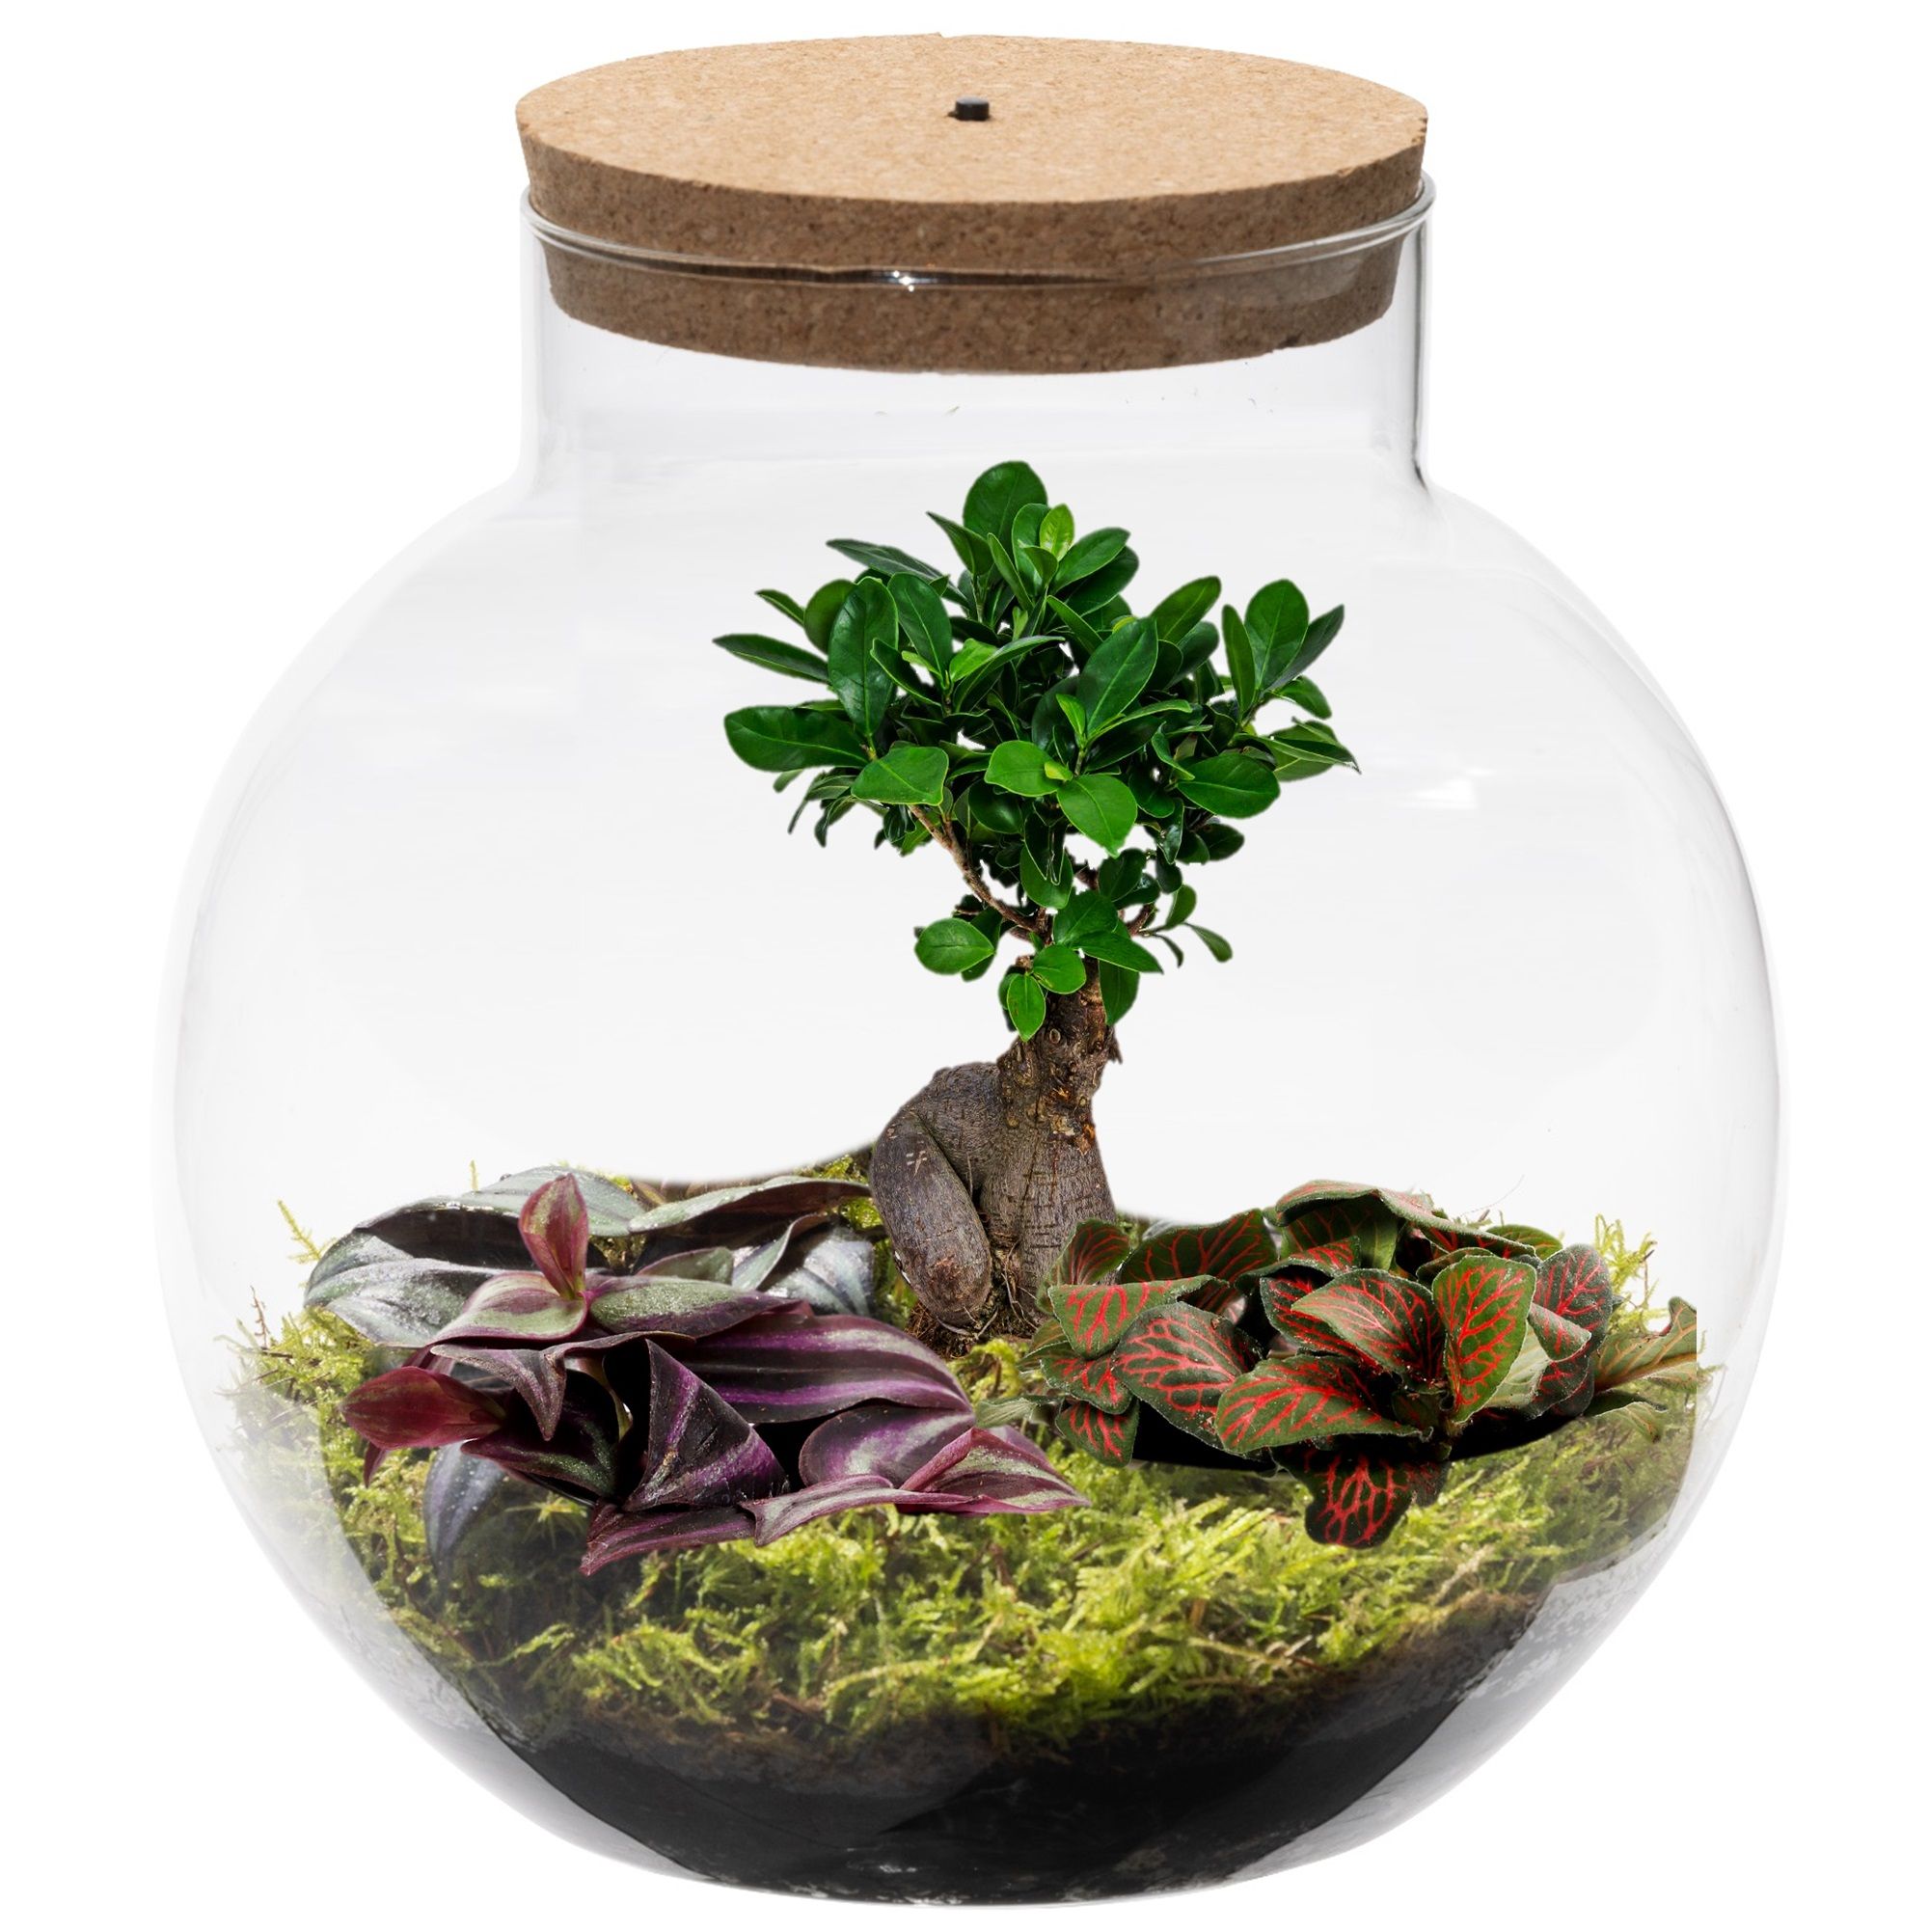 vdvelde.com - Ecosystème végétal en verre avec lampe - Ecoworld Bonsai Biodome - Plantes Terrarium - 1 Bonsai et 2 Plantes de Terrarium colorées - Verre sphérique - Hauteur 25 cm